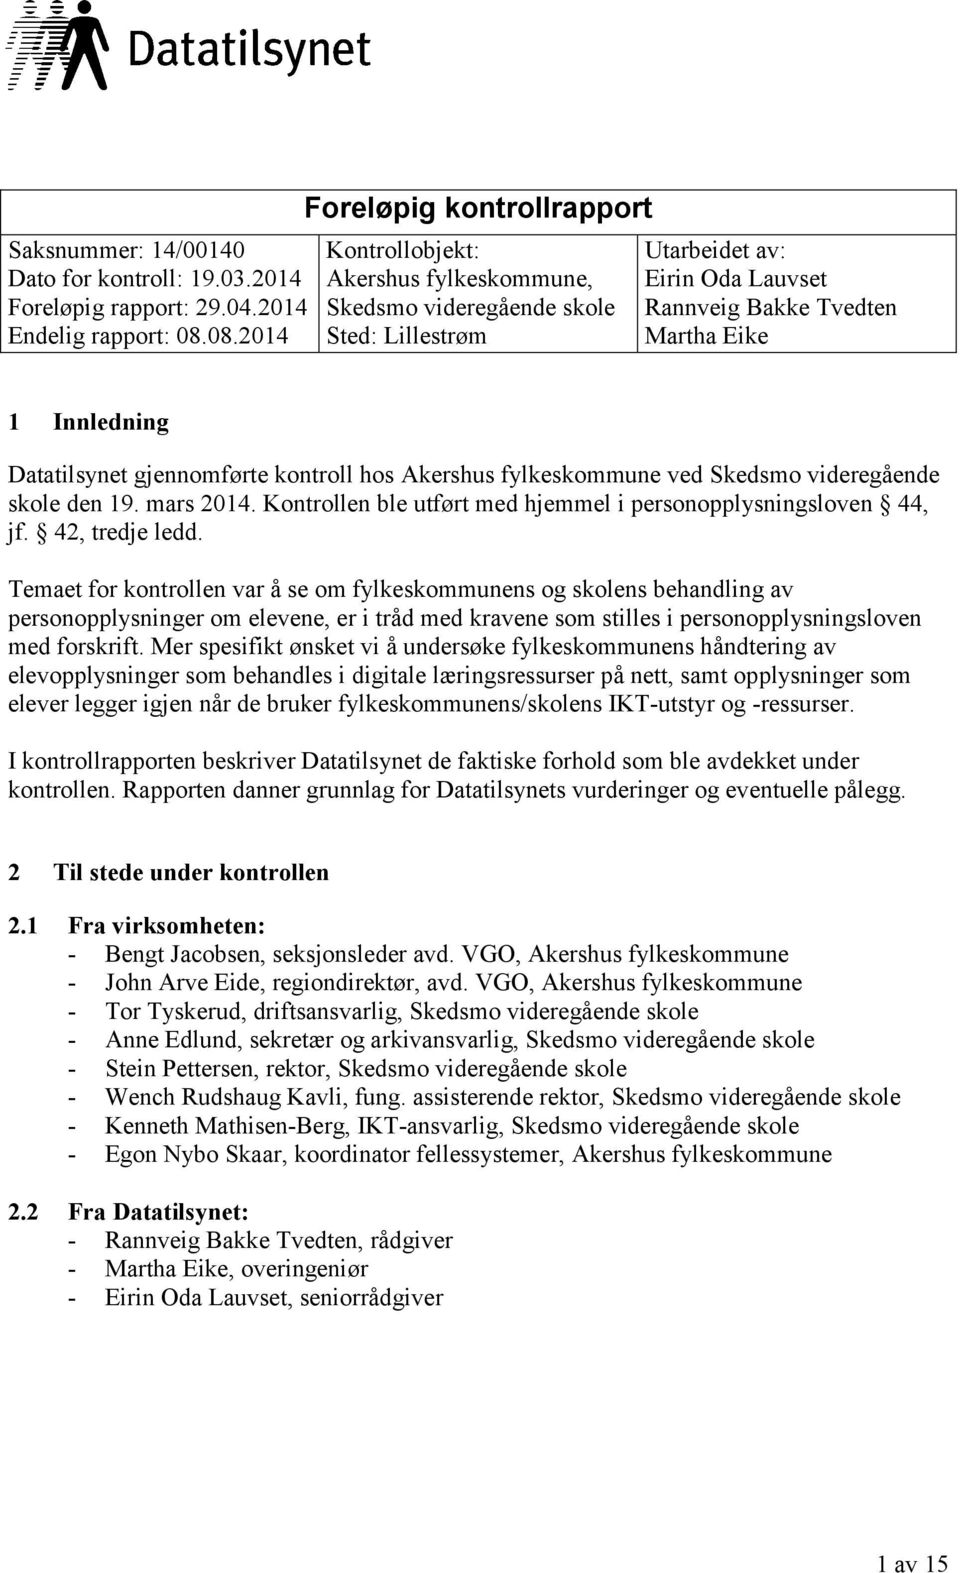 Datatilsynet gjennomførte kontroll hos Akershus fylkeskommune ved Skedsmo videregående skole den 19. mars 2014. Kontrollen ble utført med hjemmel i personopplysningsloven 44, jf. 42, tredje ledd.